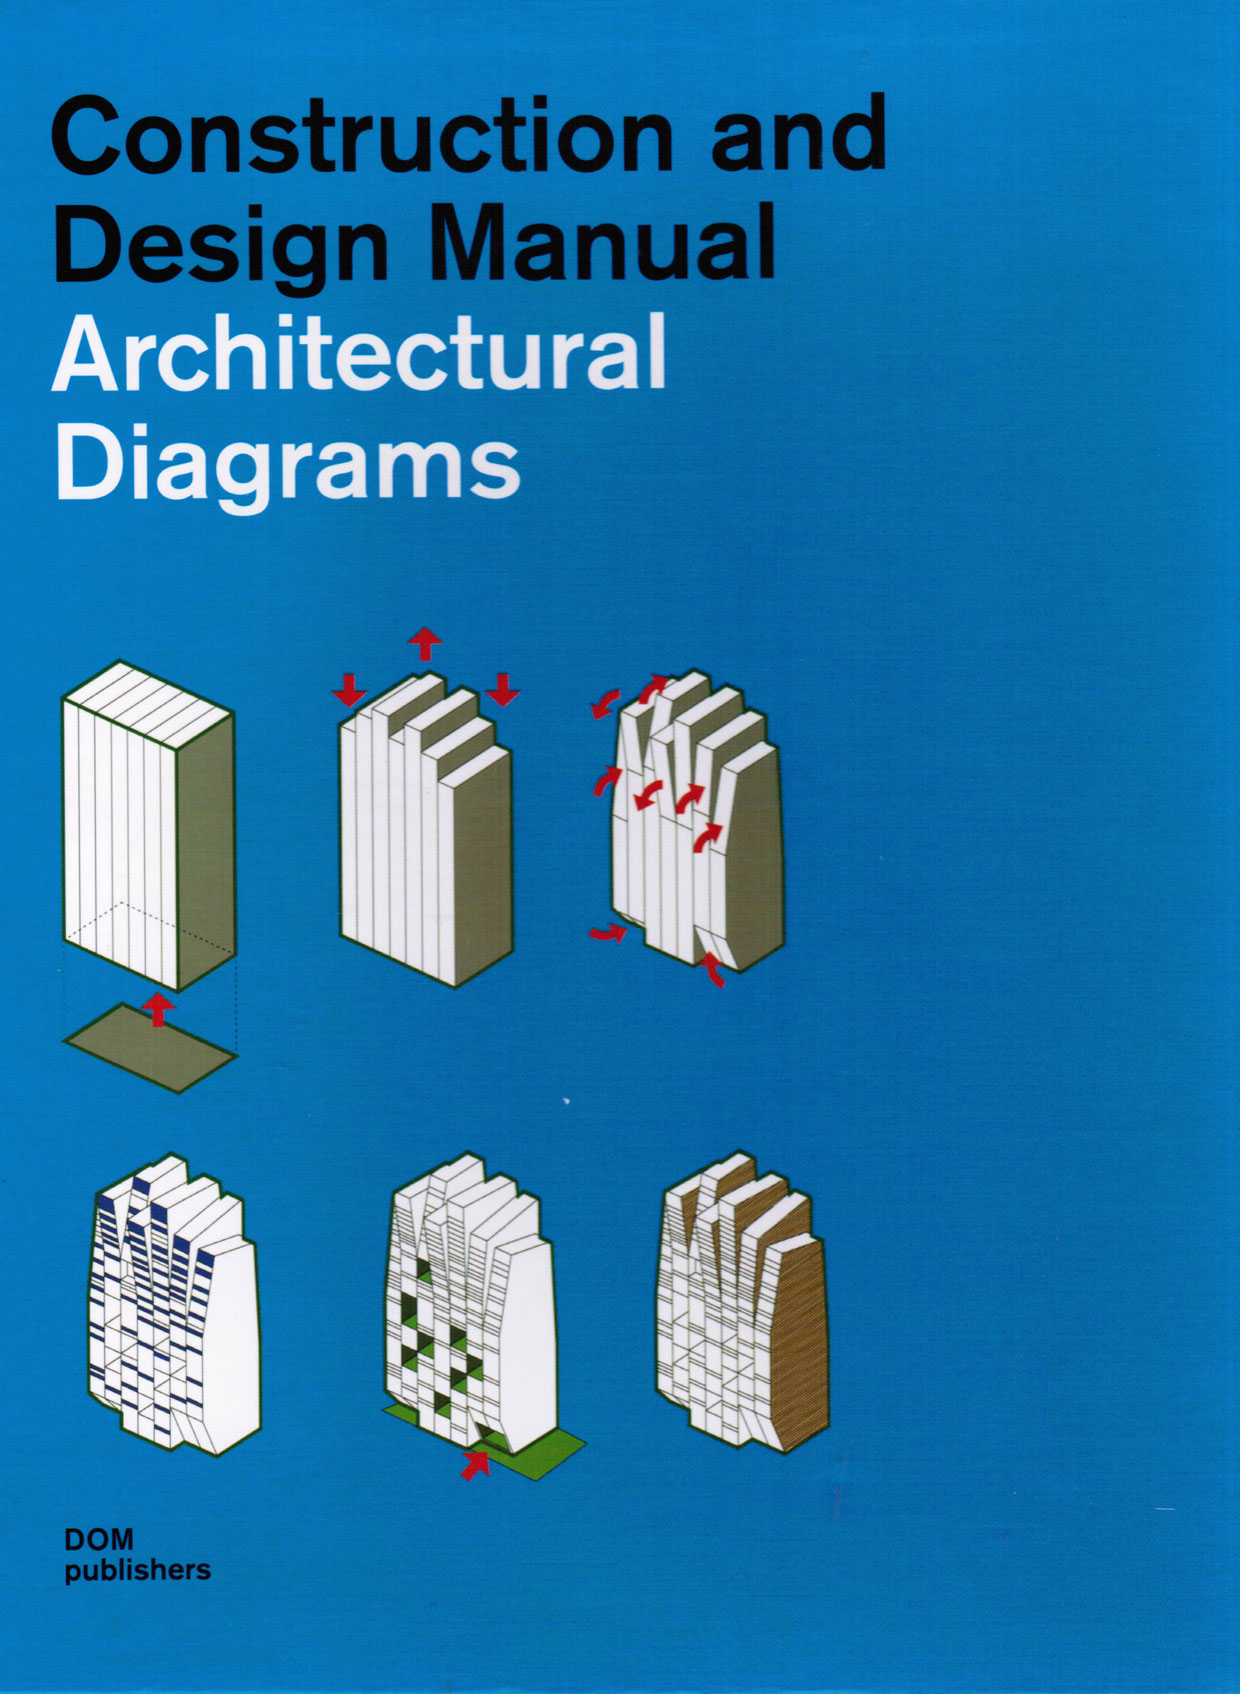 Architecture book